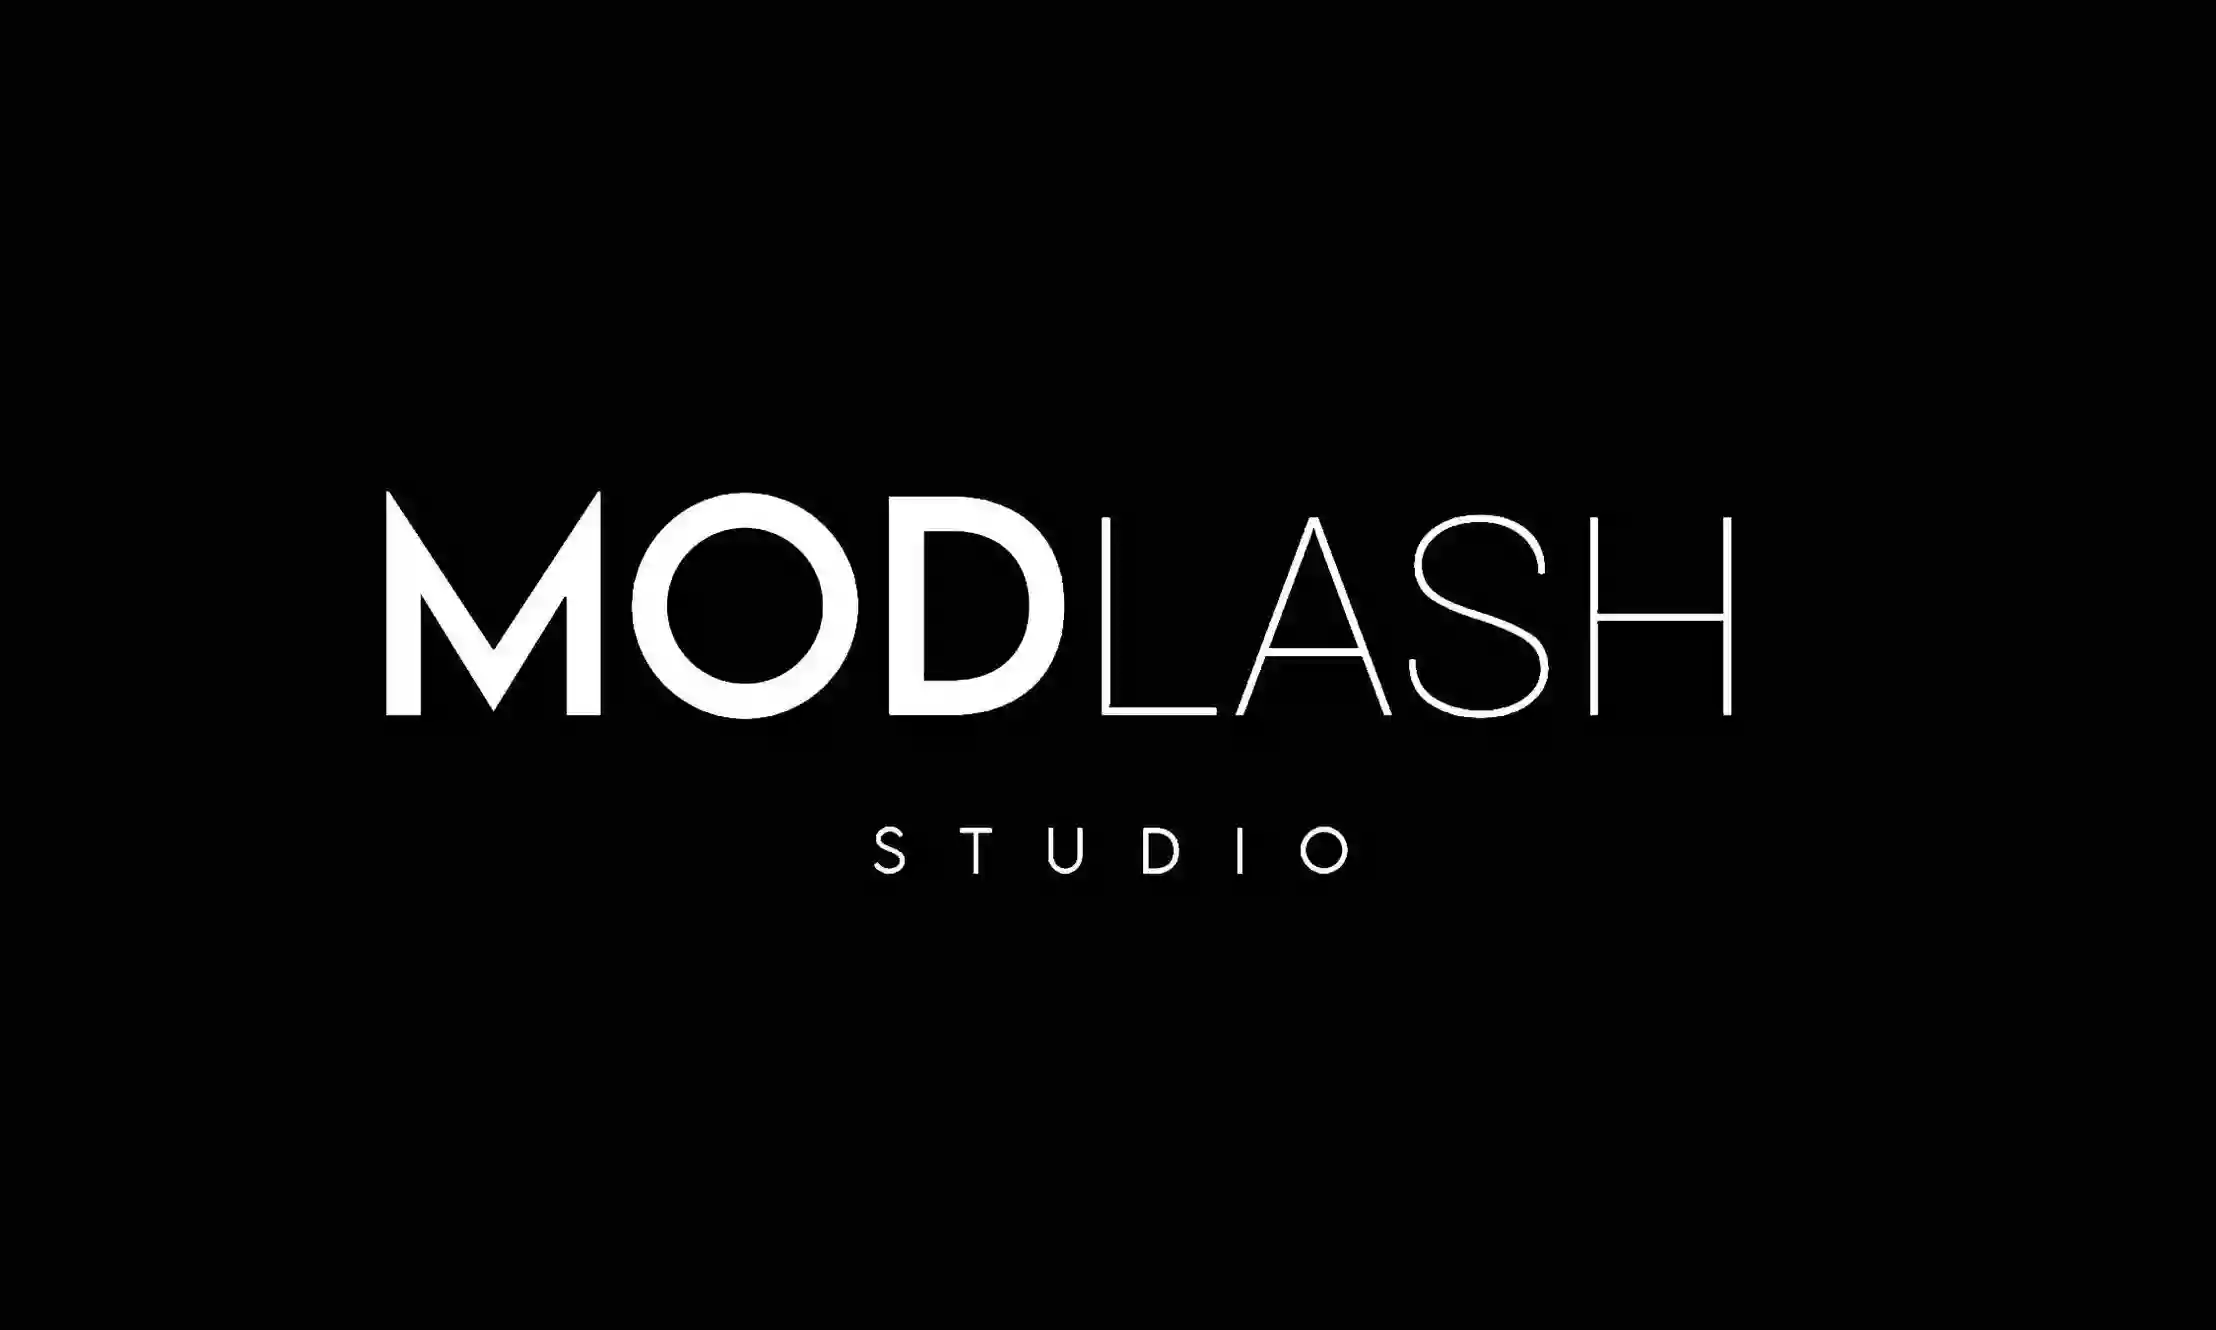 ModLash Studio